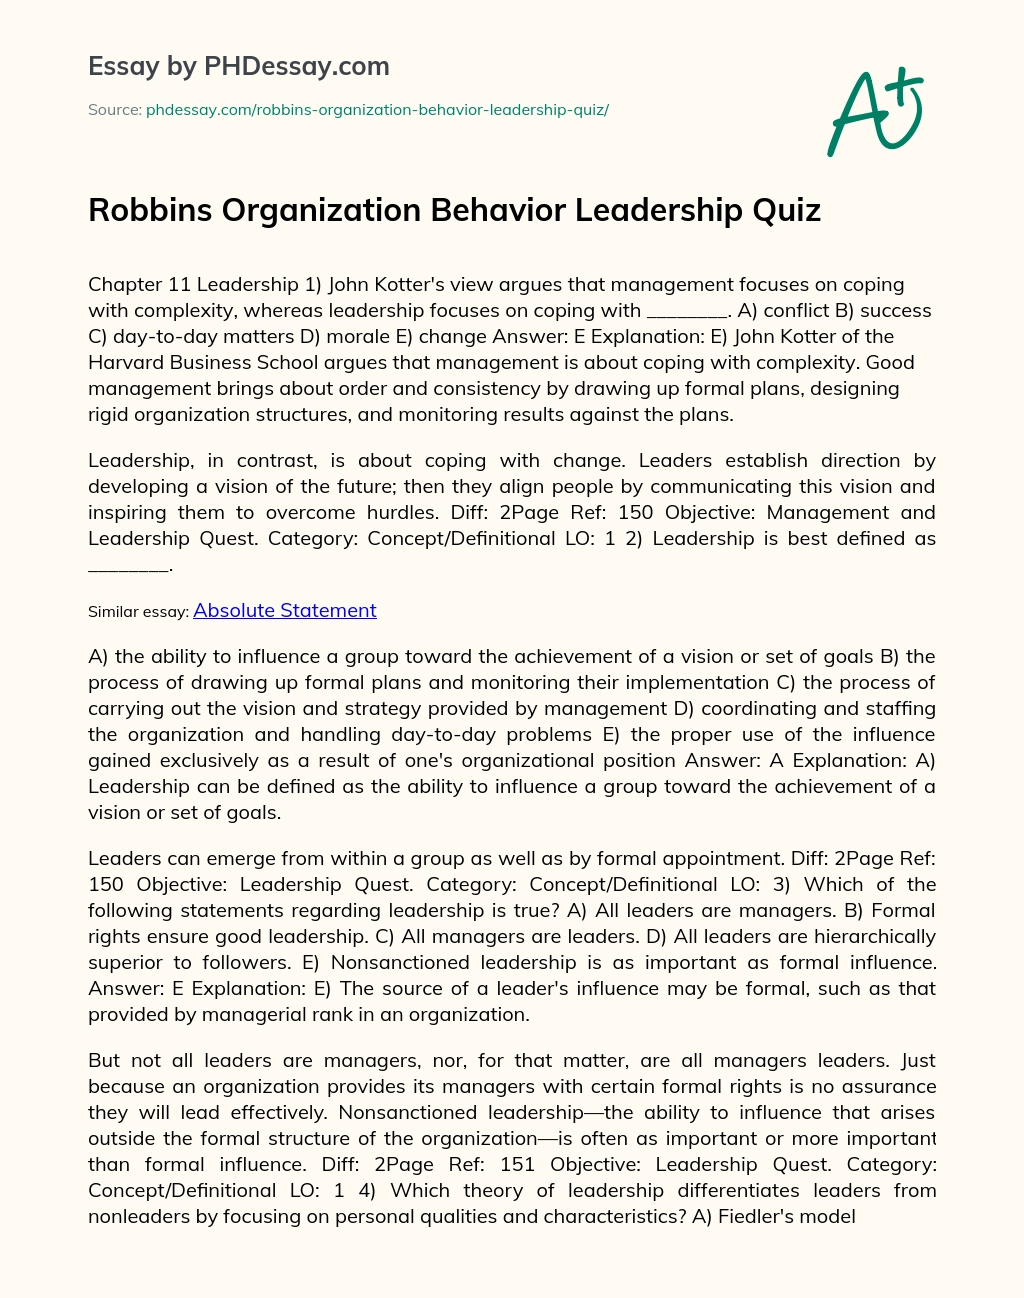 Robbins Organization Behavior Leadership Quiz essay